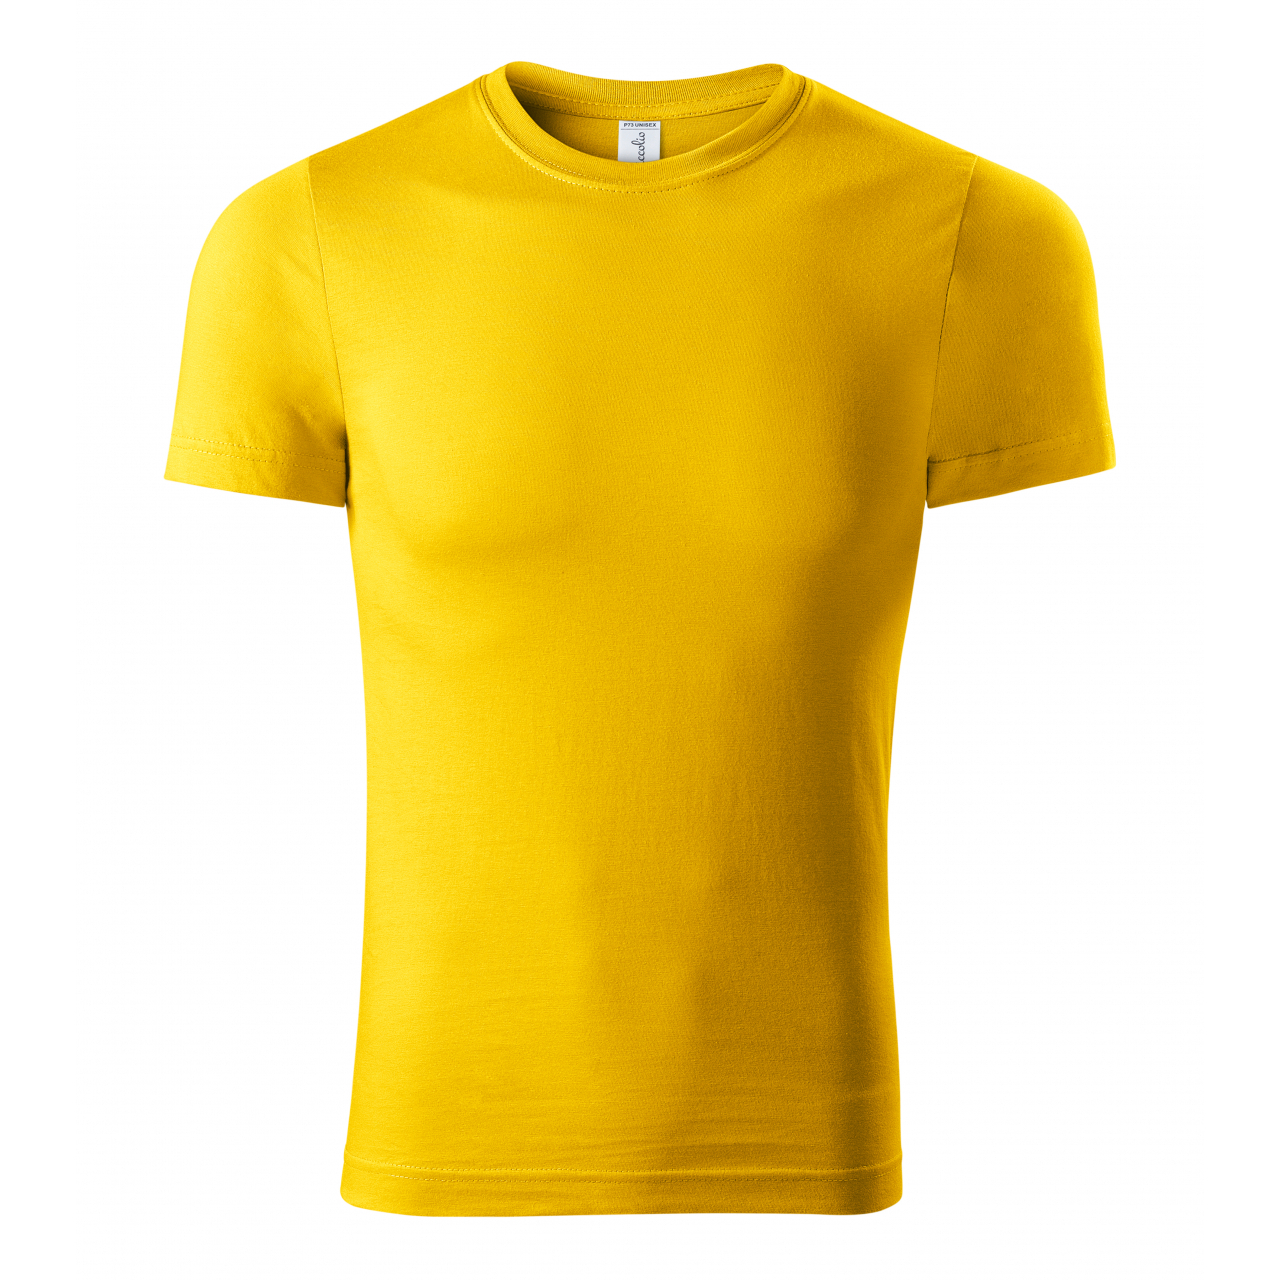 Tričko unisex Piccolio Paint - žluté, XS